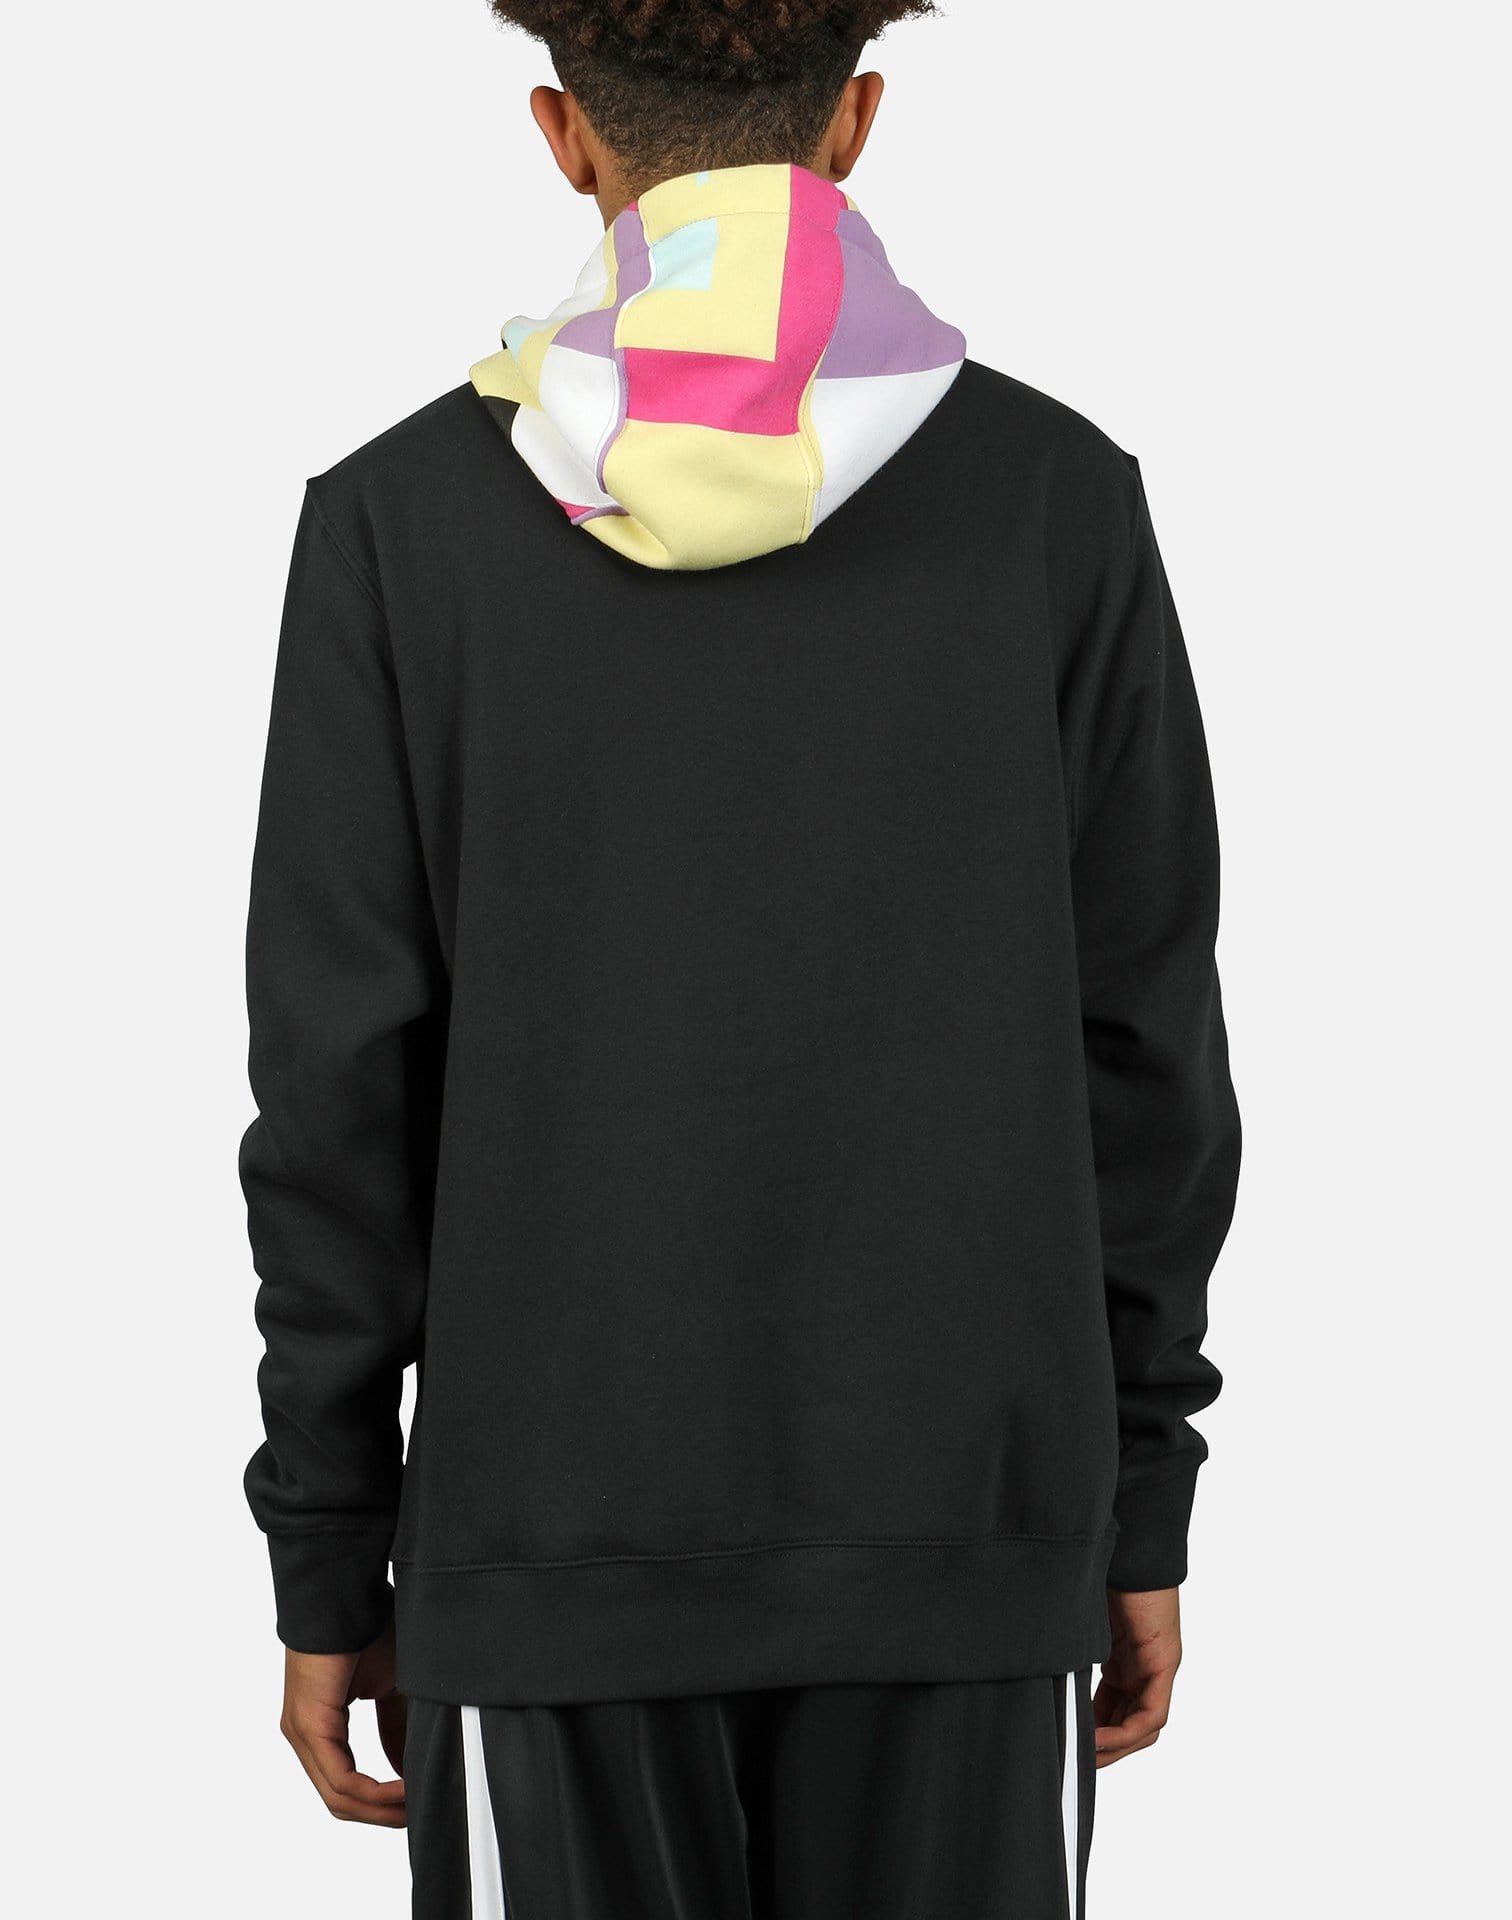 men's nike sportswear club fleece geometric hoodie